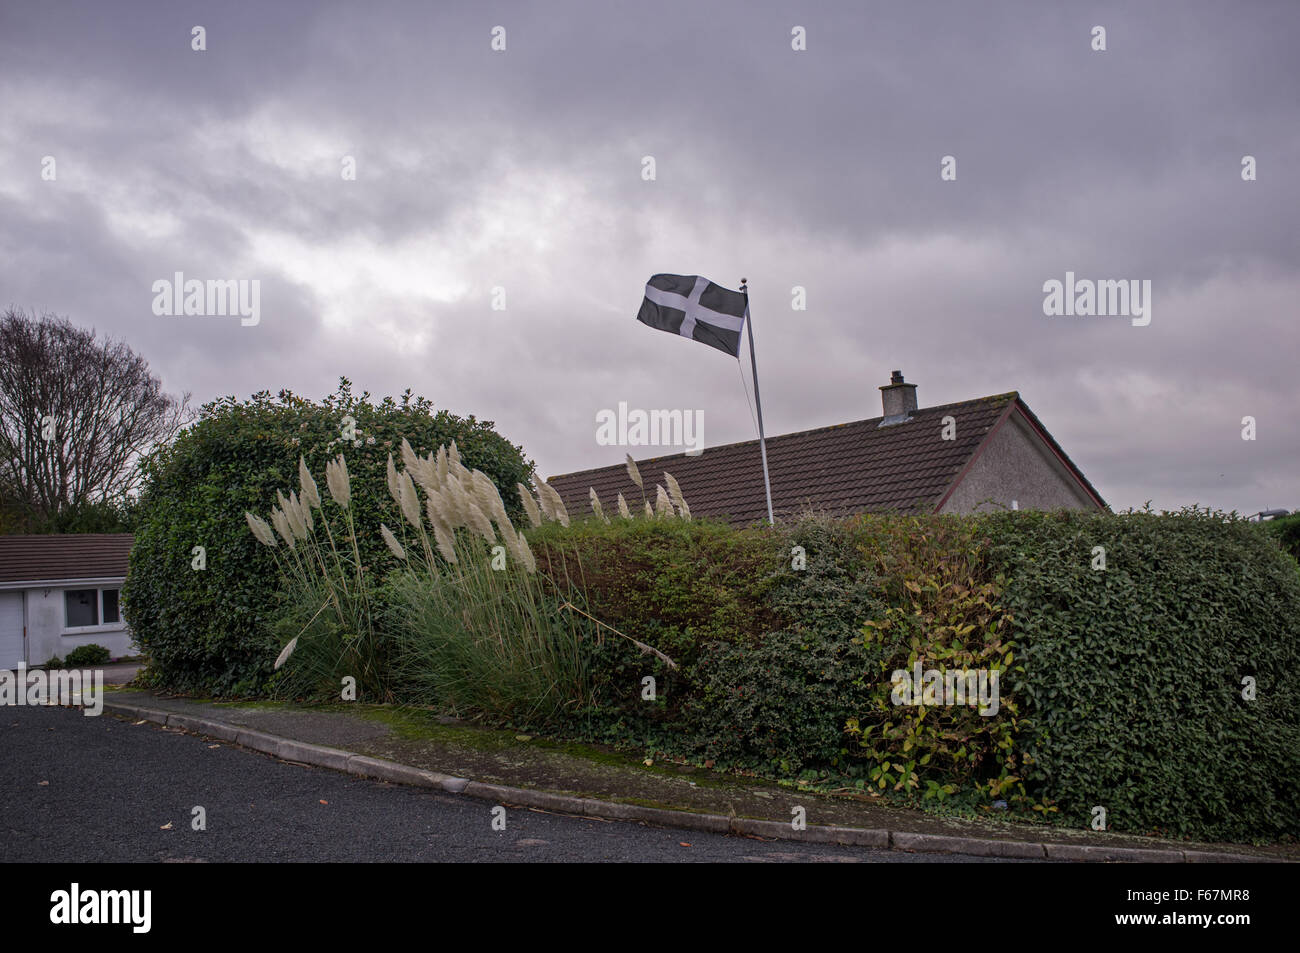 A Cornish flag flies in a garden Stock Photo